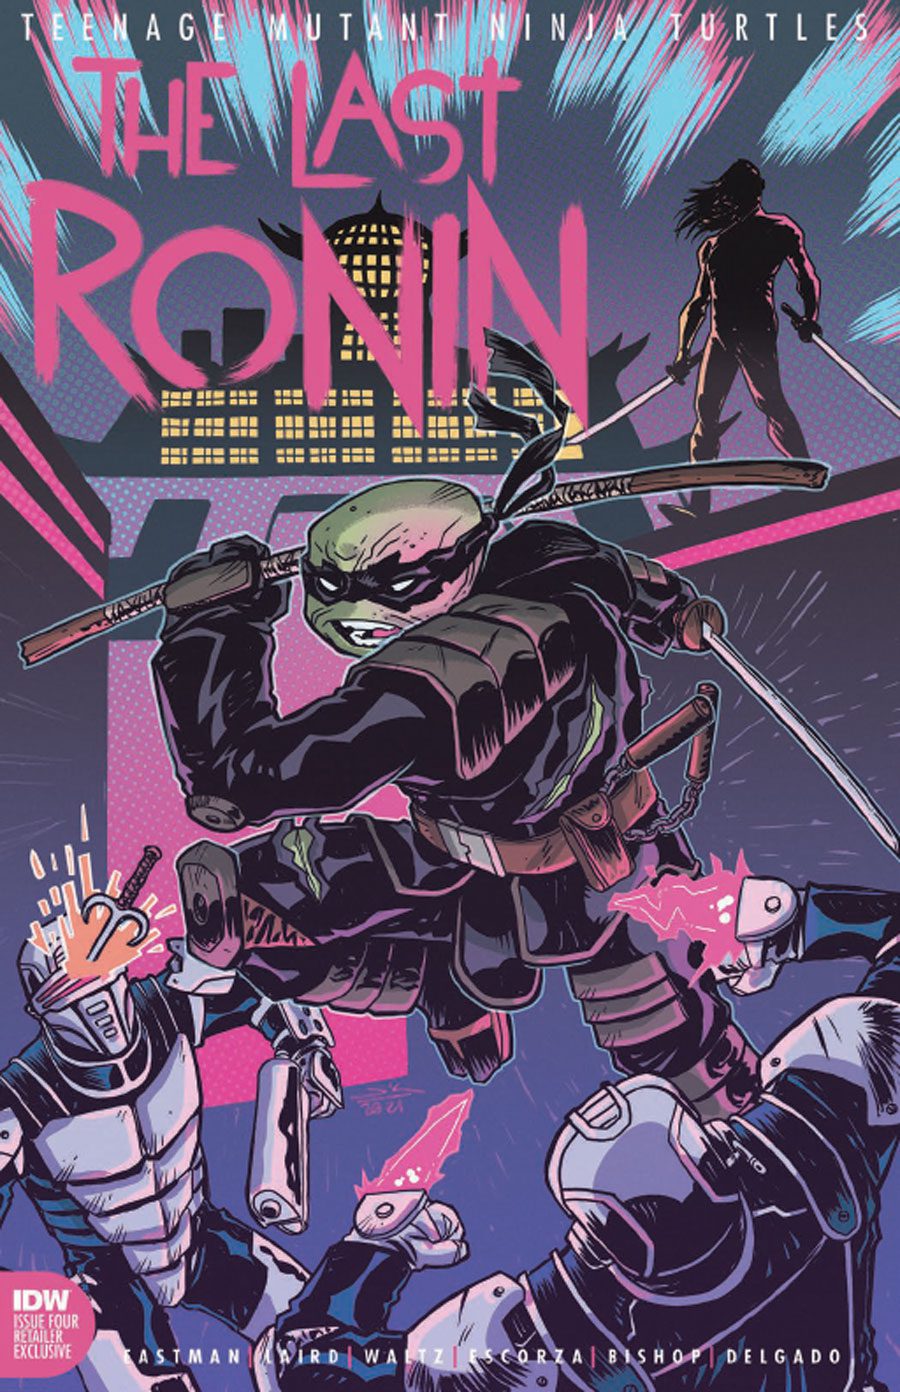 TMNT Last Ronin #4 (Jetpack Comics Exclusive)